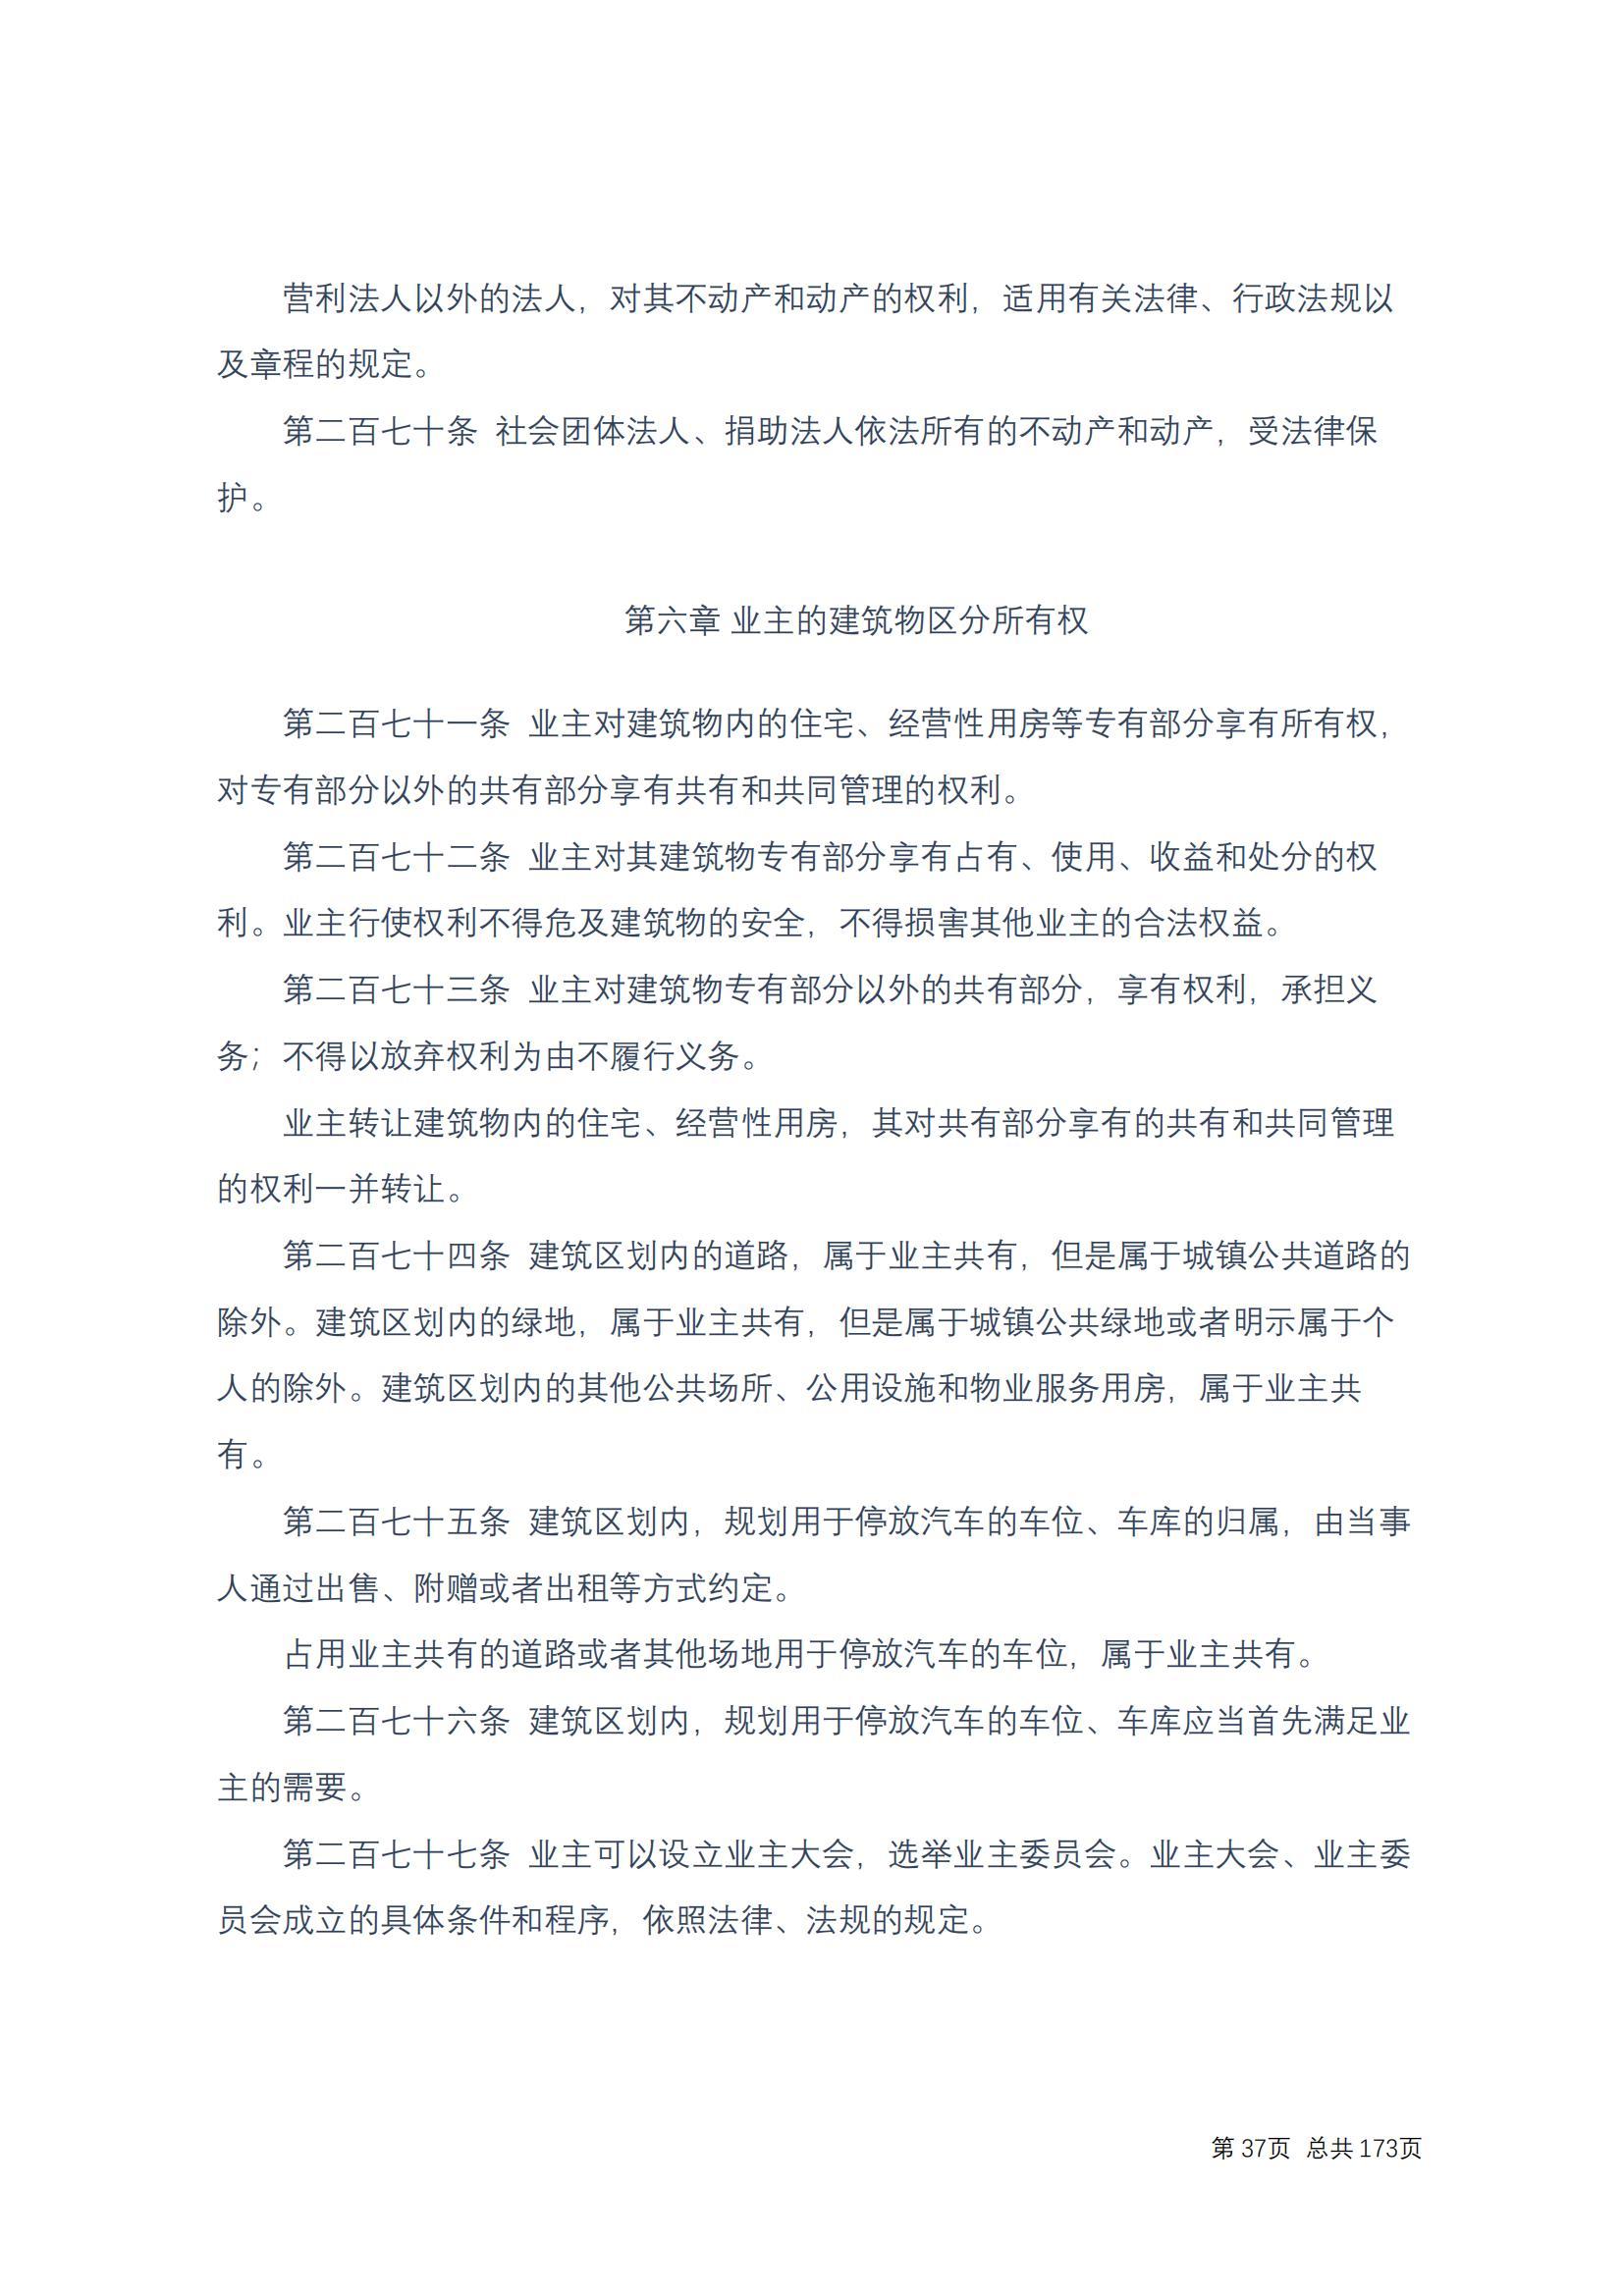 中华人民共和国民法典 修改过_36